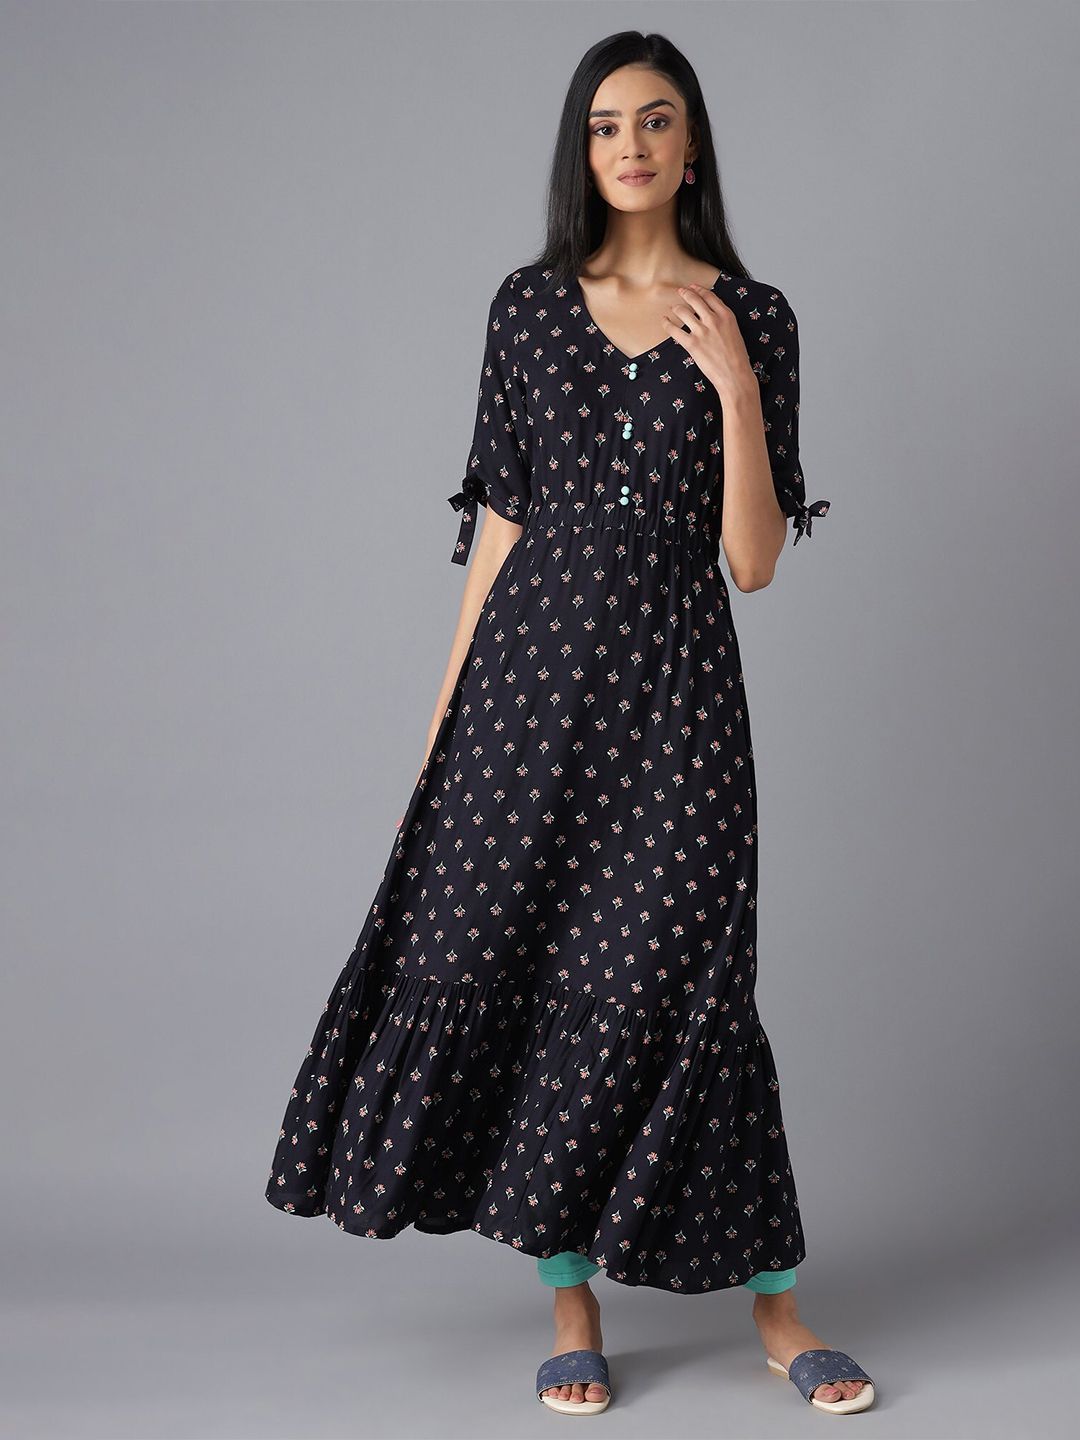 AURELIA Black Ethnic Motifs Maxi Dress Price in India